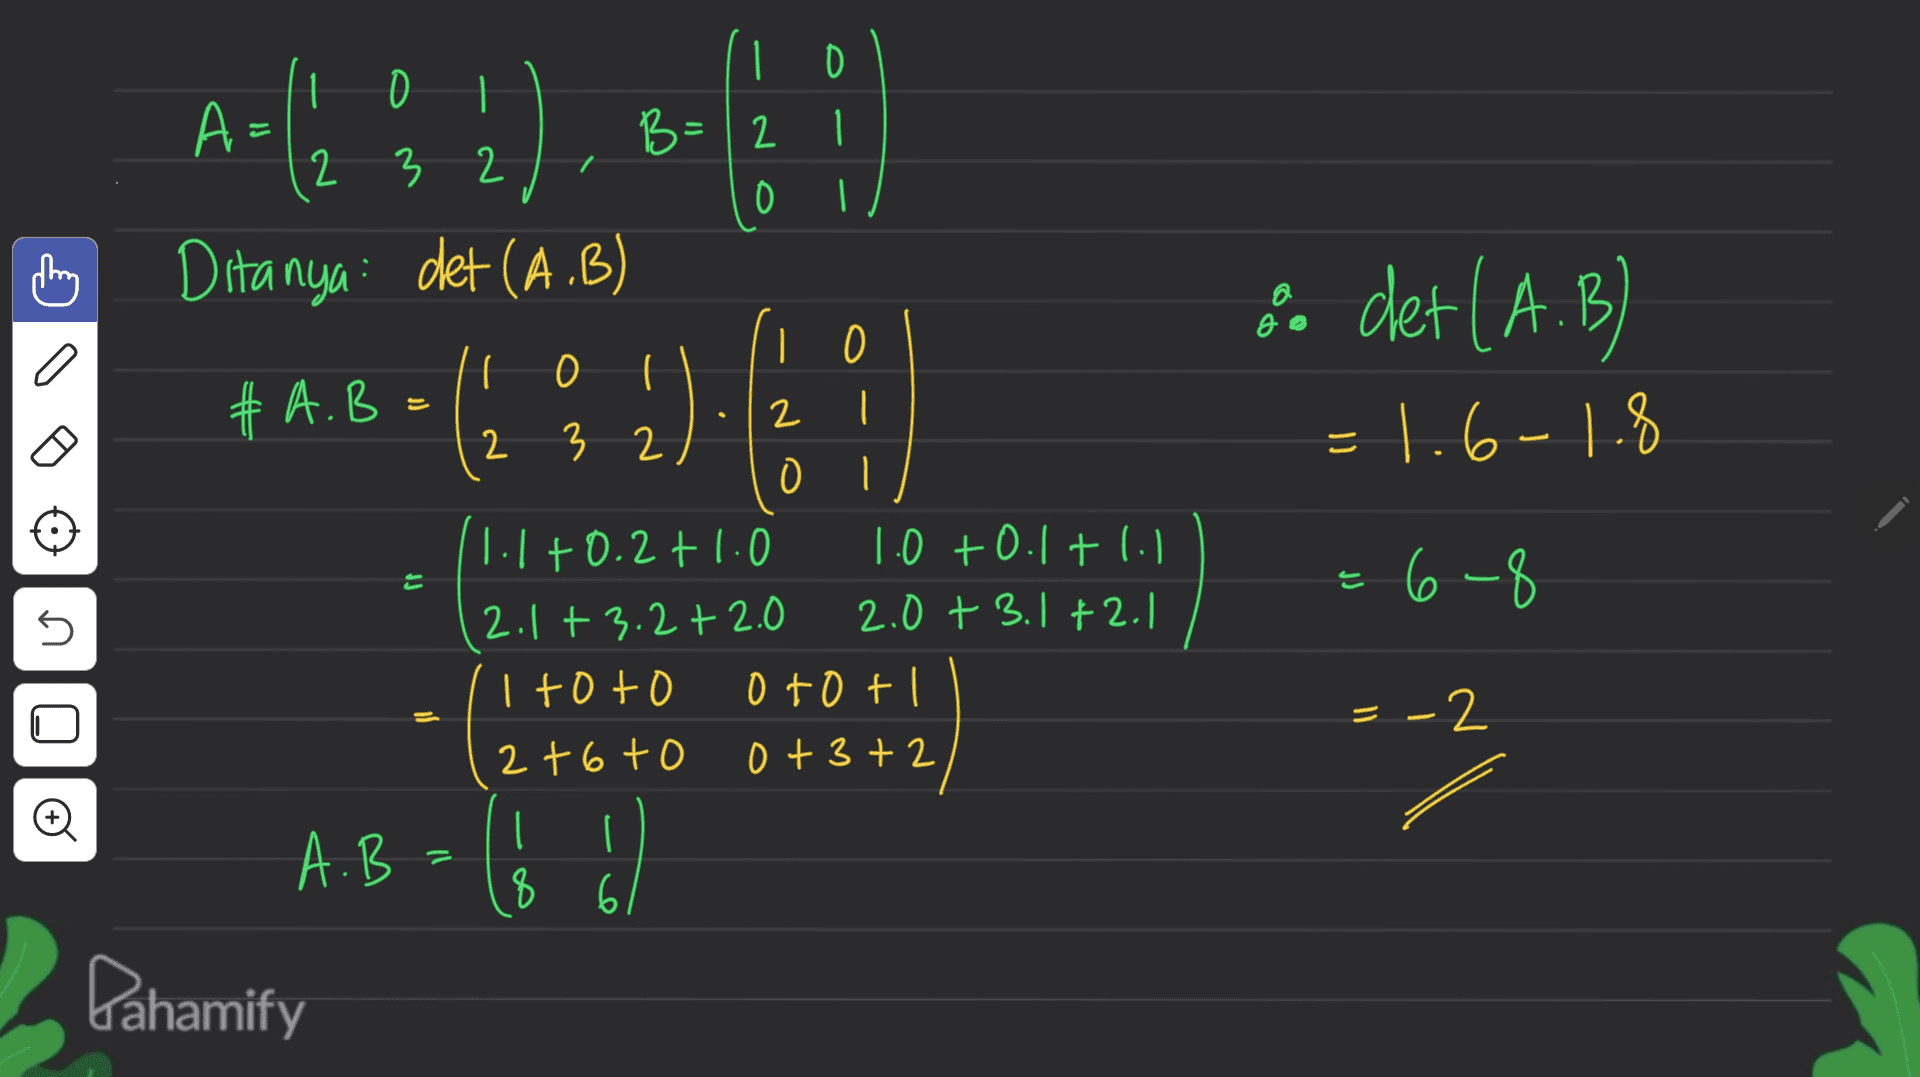 A-(2 % 2). C a | 0 1 0 B=12 1 2 3 2 0 | Ditanya det (A.B) | 0 I O I # A.B 2 2 3 2 0 I 1.1 +0.2+1.0 1.0 +0.1 +1. 2.1 +3.2 + 2.0 2.0 + 3.1+2.1 I toto otot 2t6to 0 + 3+2 a det (A.B) -1.6-1.8 = ro = 6-8 는 no - = -2 A.B | 8 61 Pahamify 